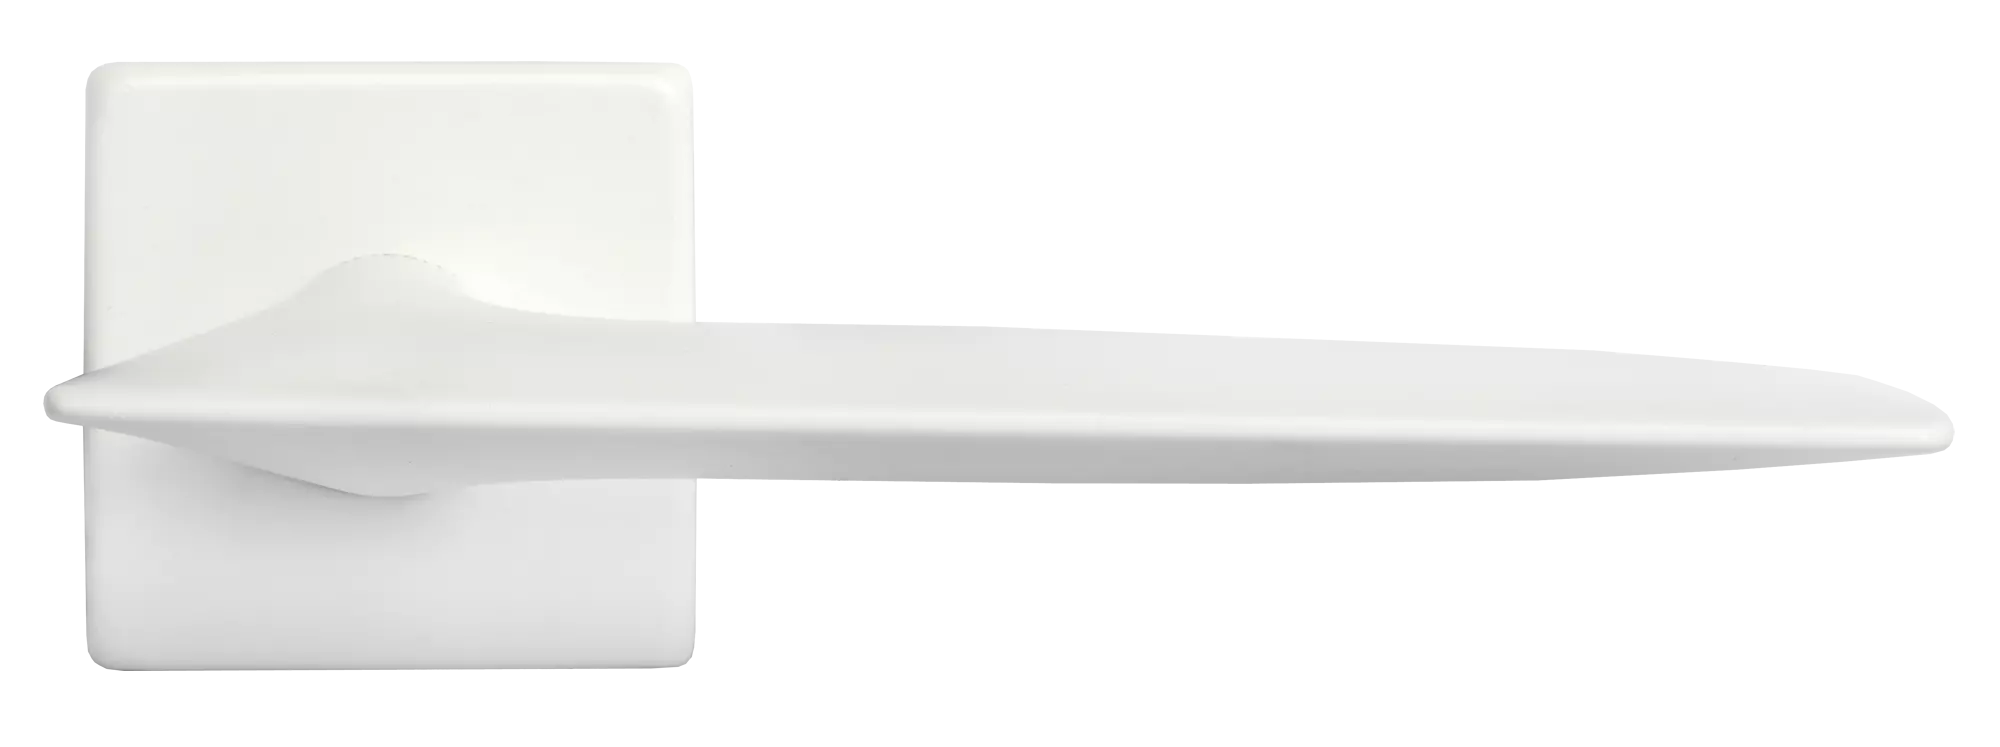 GALACTIC S5 BIA, ручка дверная, цвет - белый фото купить в Липецке